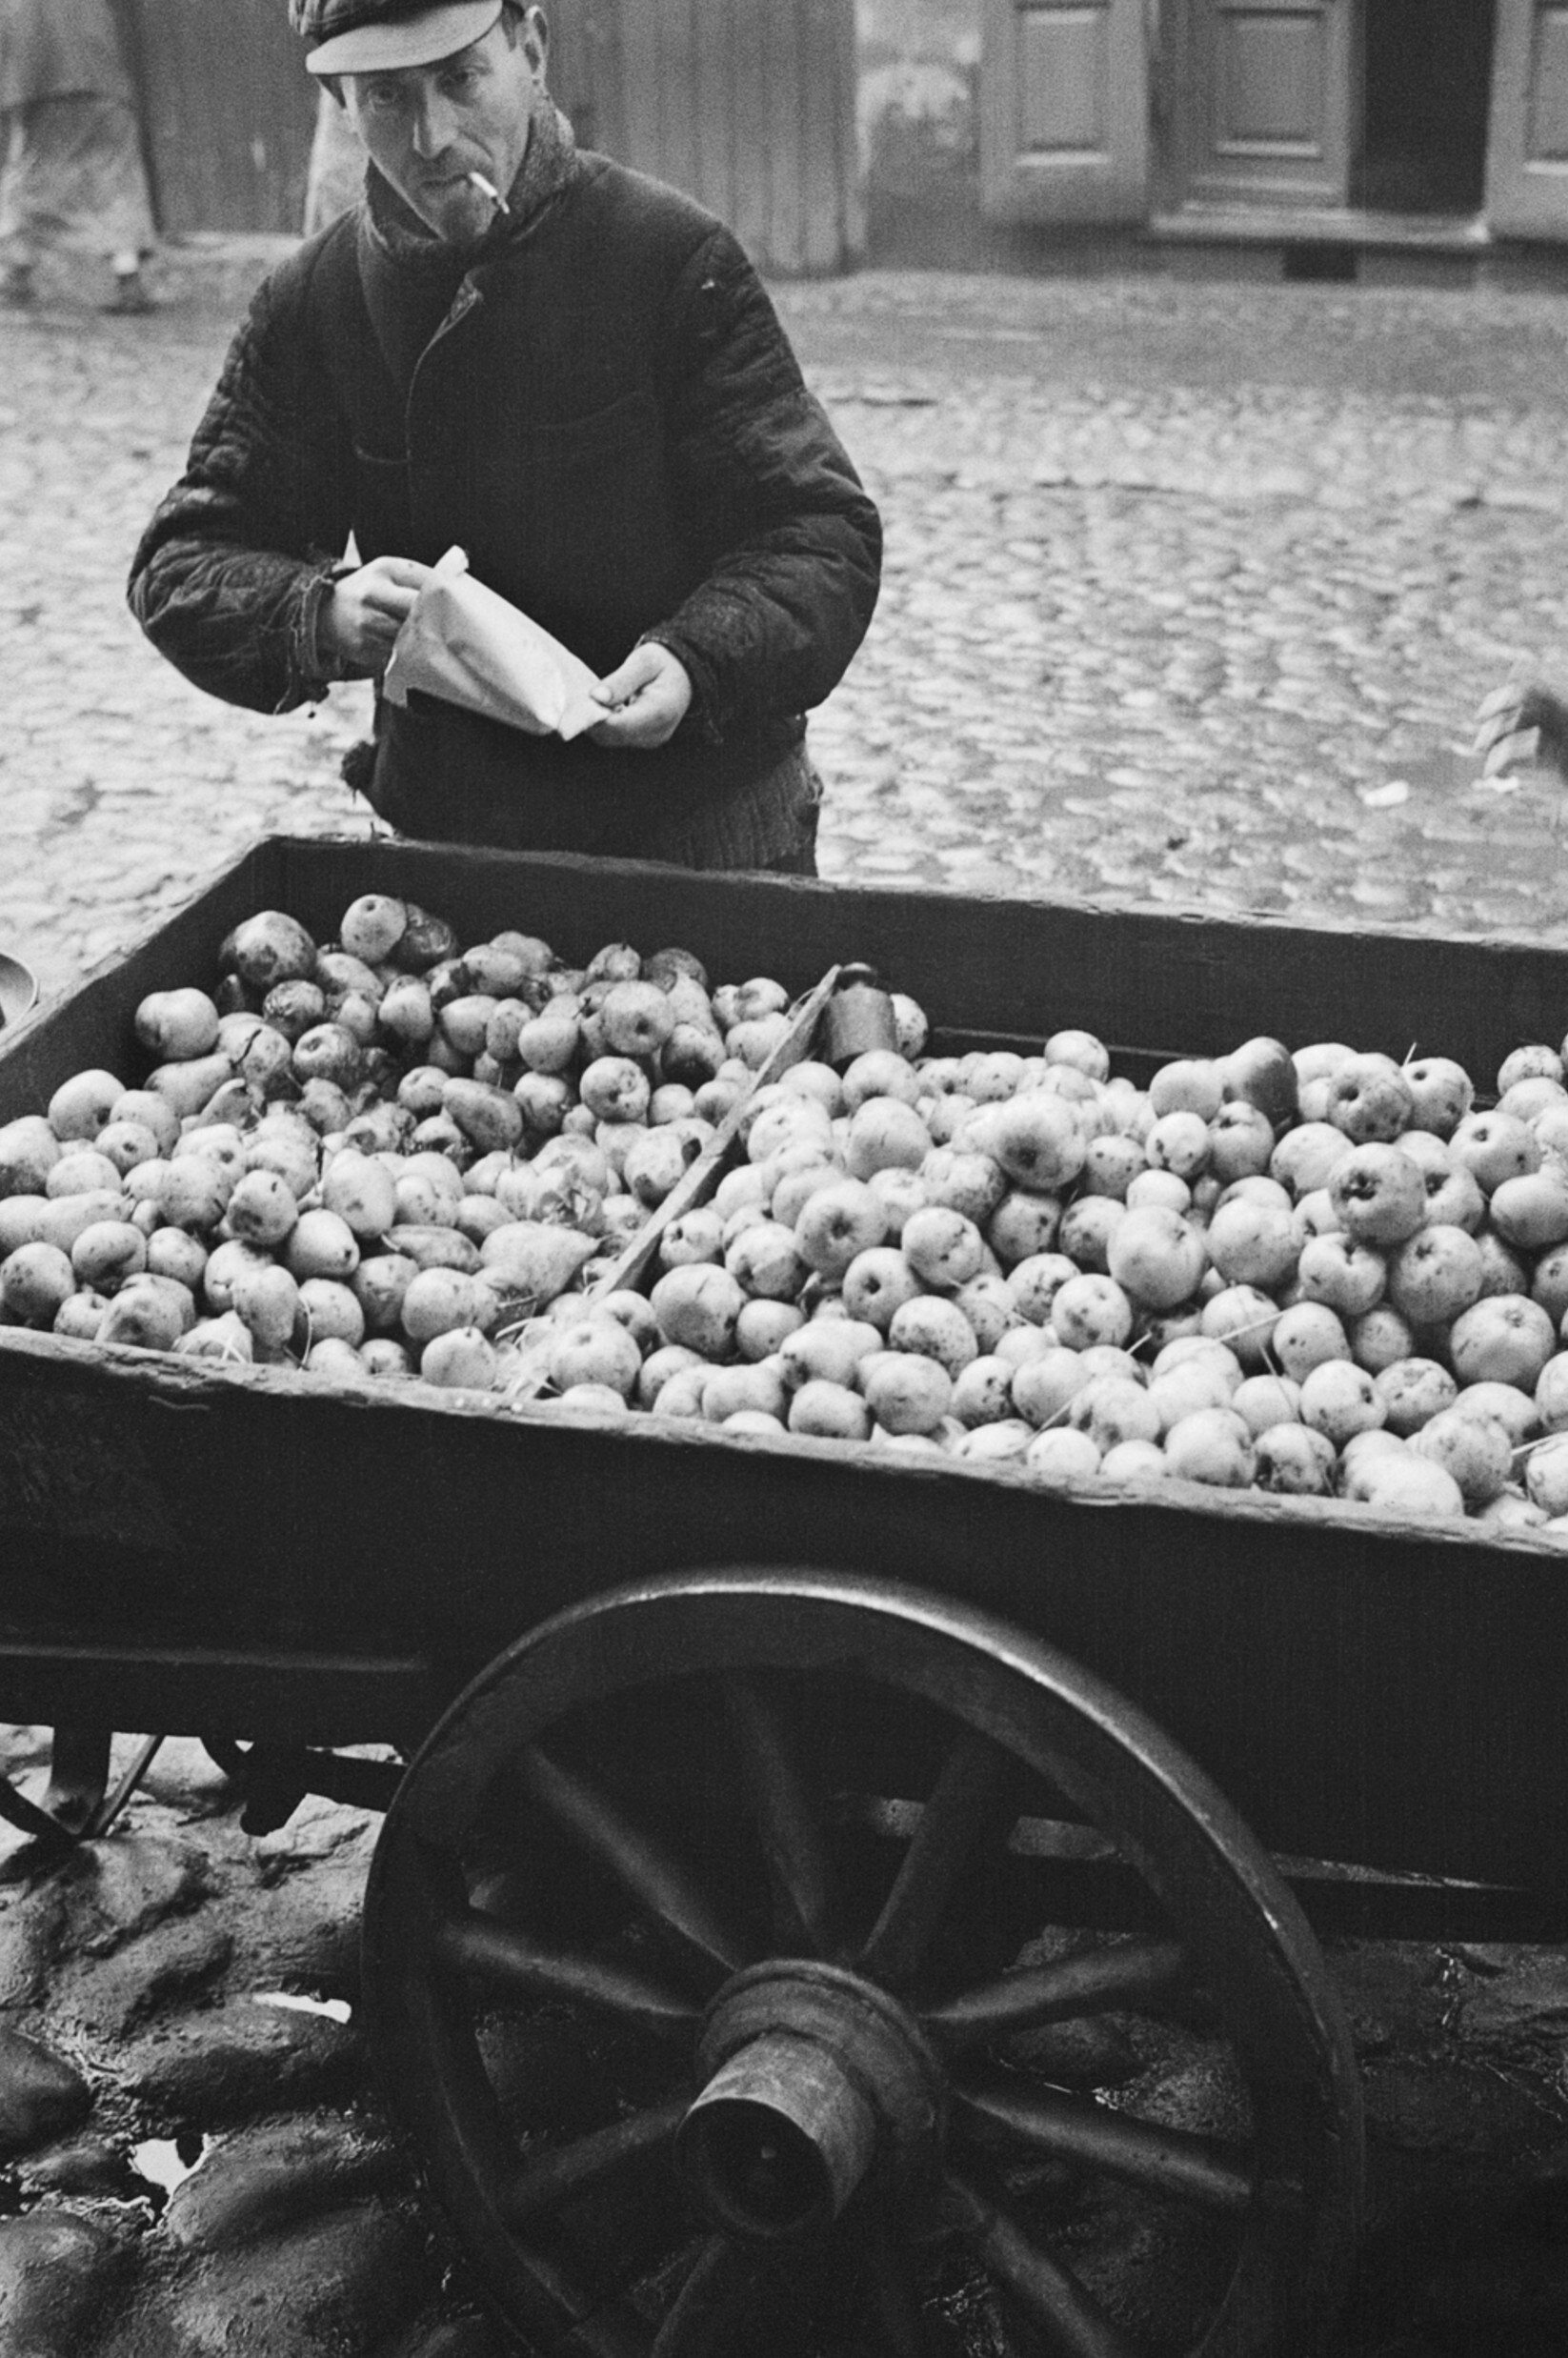 Продавец фруктов у тележки, Варшава, ок. 1935-38 гг. Фотограф Роман Вишняк